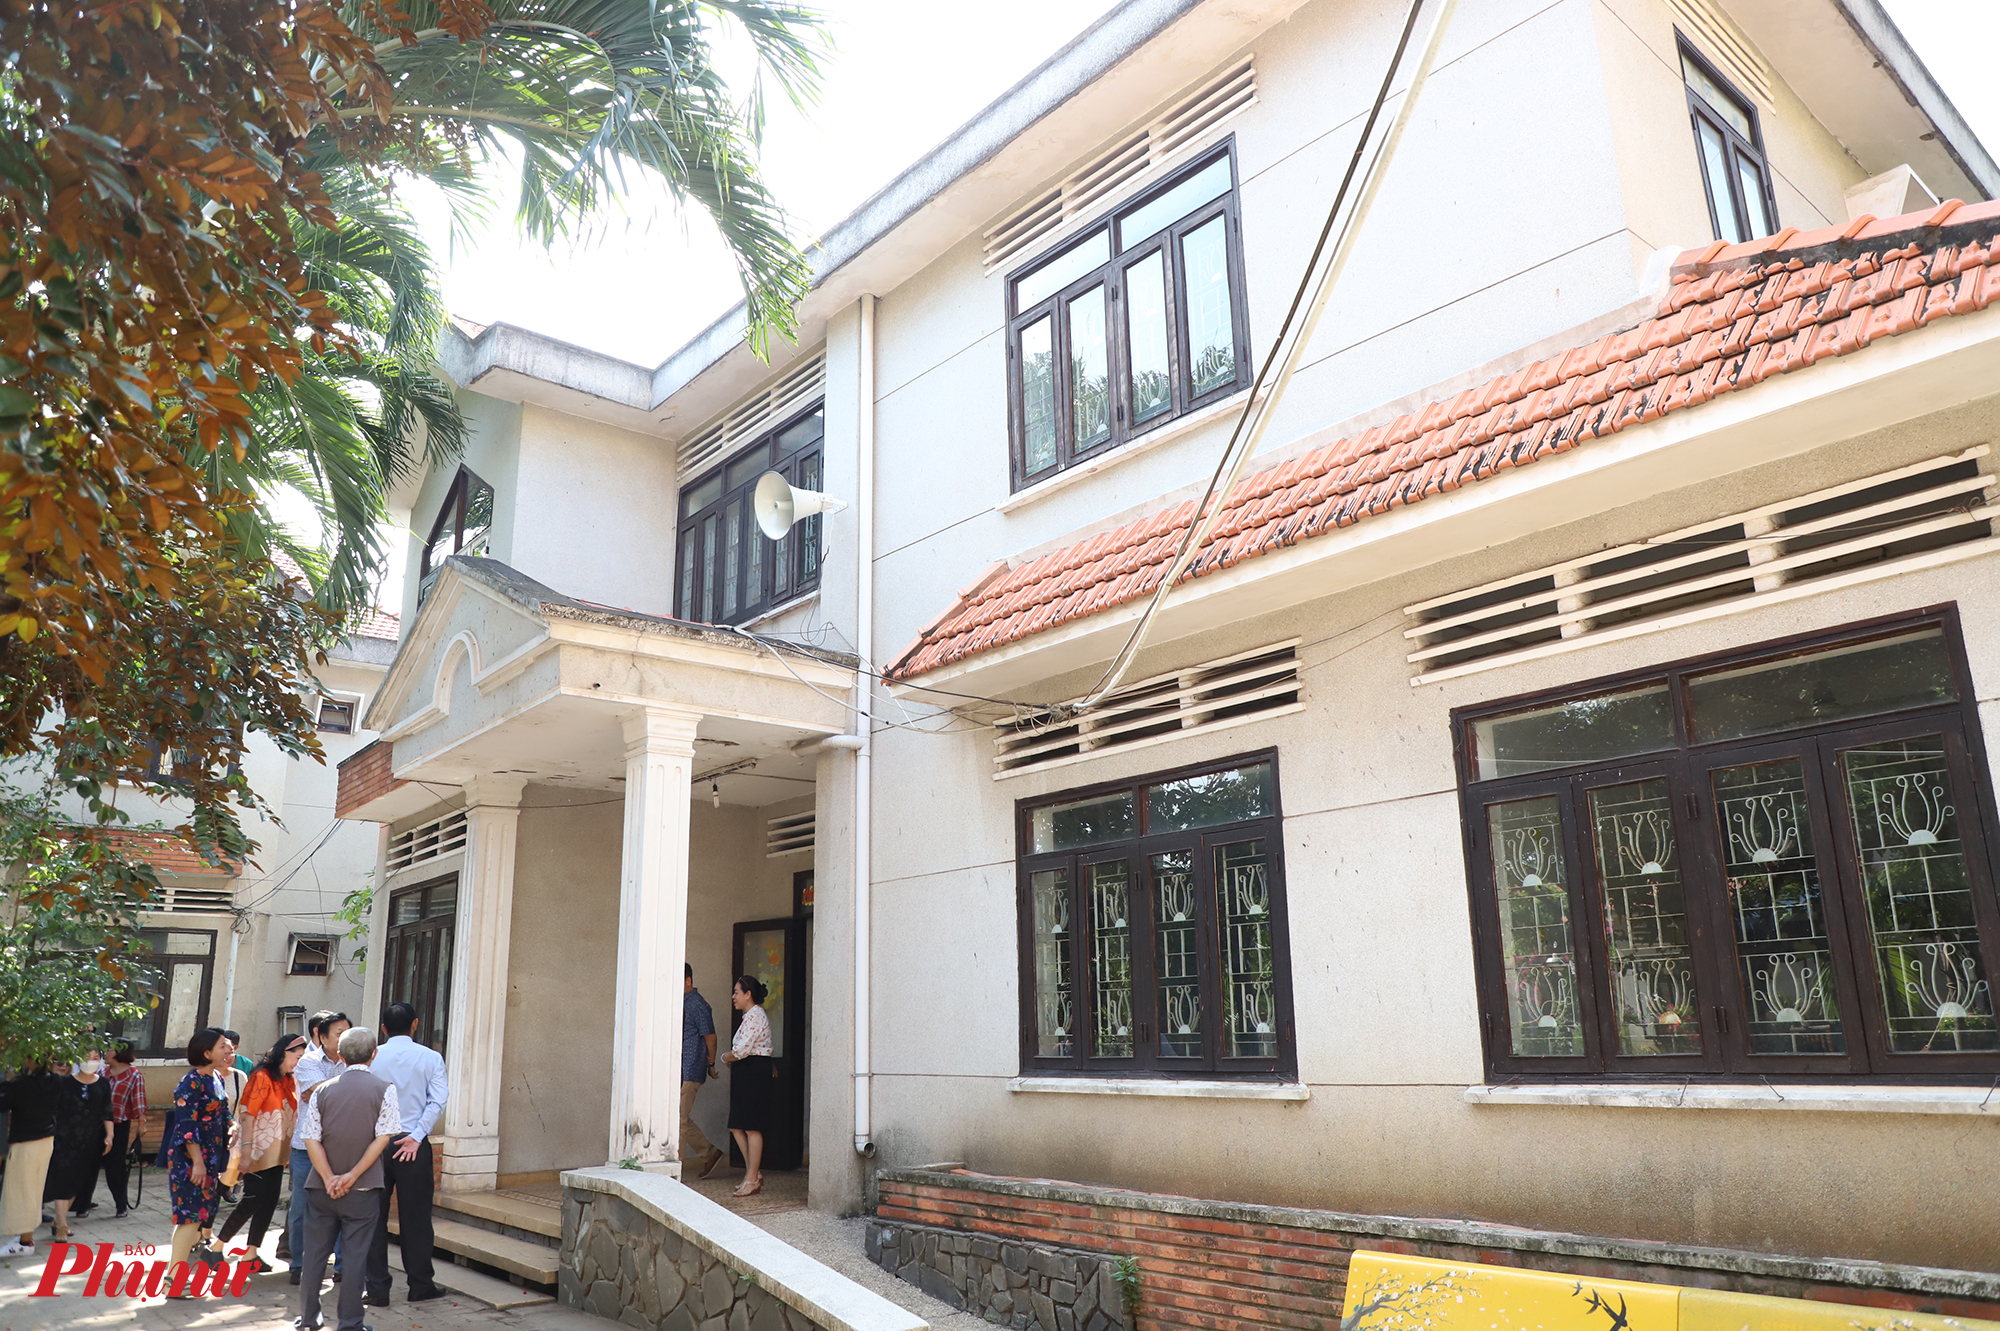 Viện dưỡng lão Thị Nghè có 15 khu nhà ở, hiện đã sử dụng 14 khu. Khu nhà dự kiến dành cho các nghệ sĩ nằm ở phía sau, xung quanh là không gian vườn cây xanh mát. 